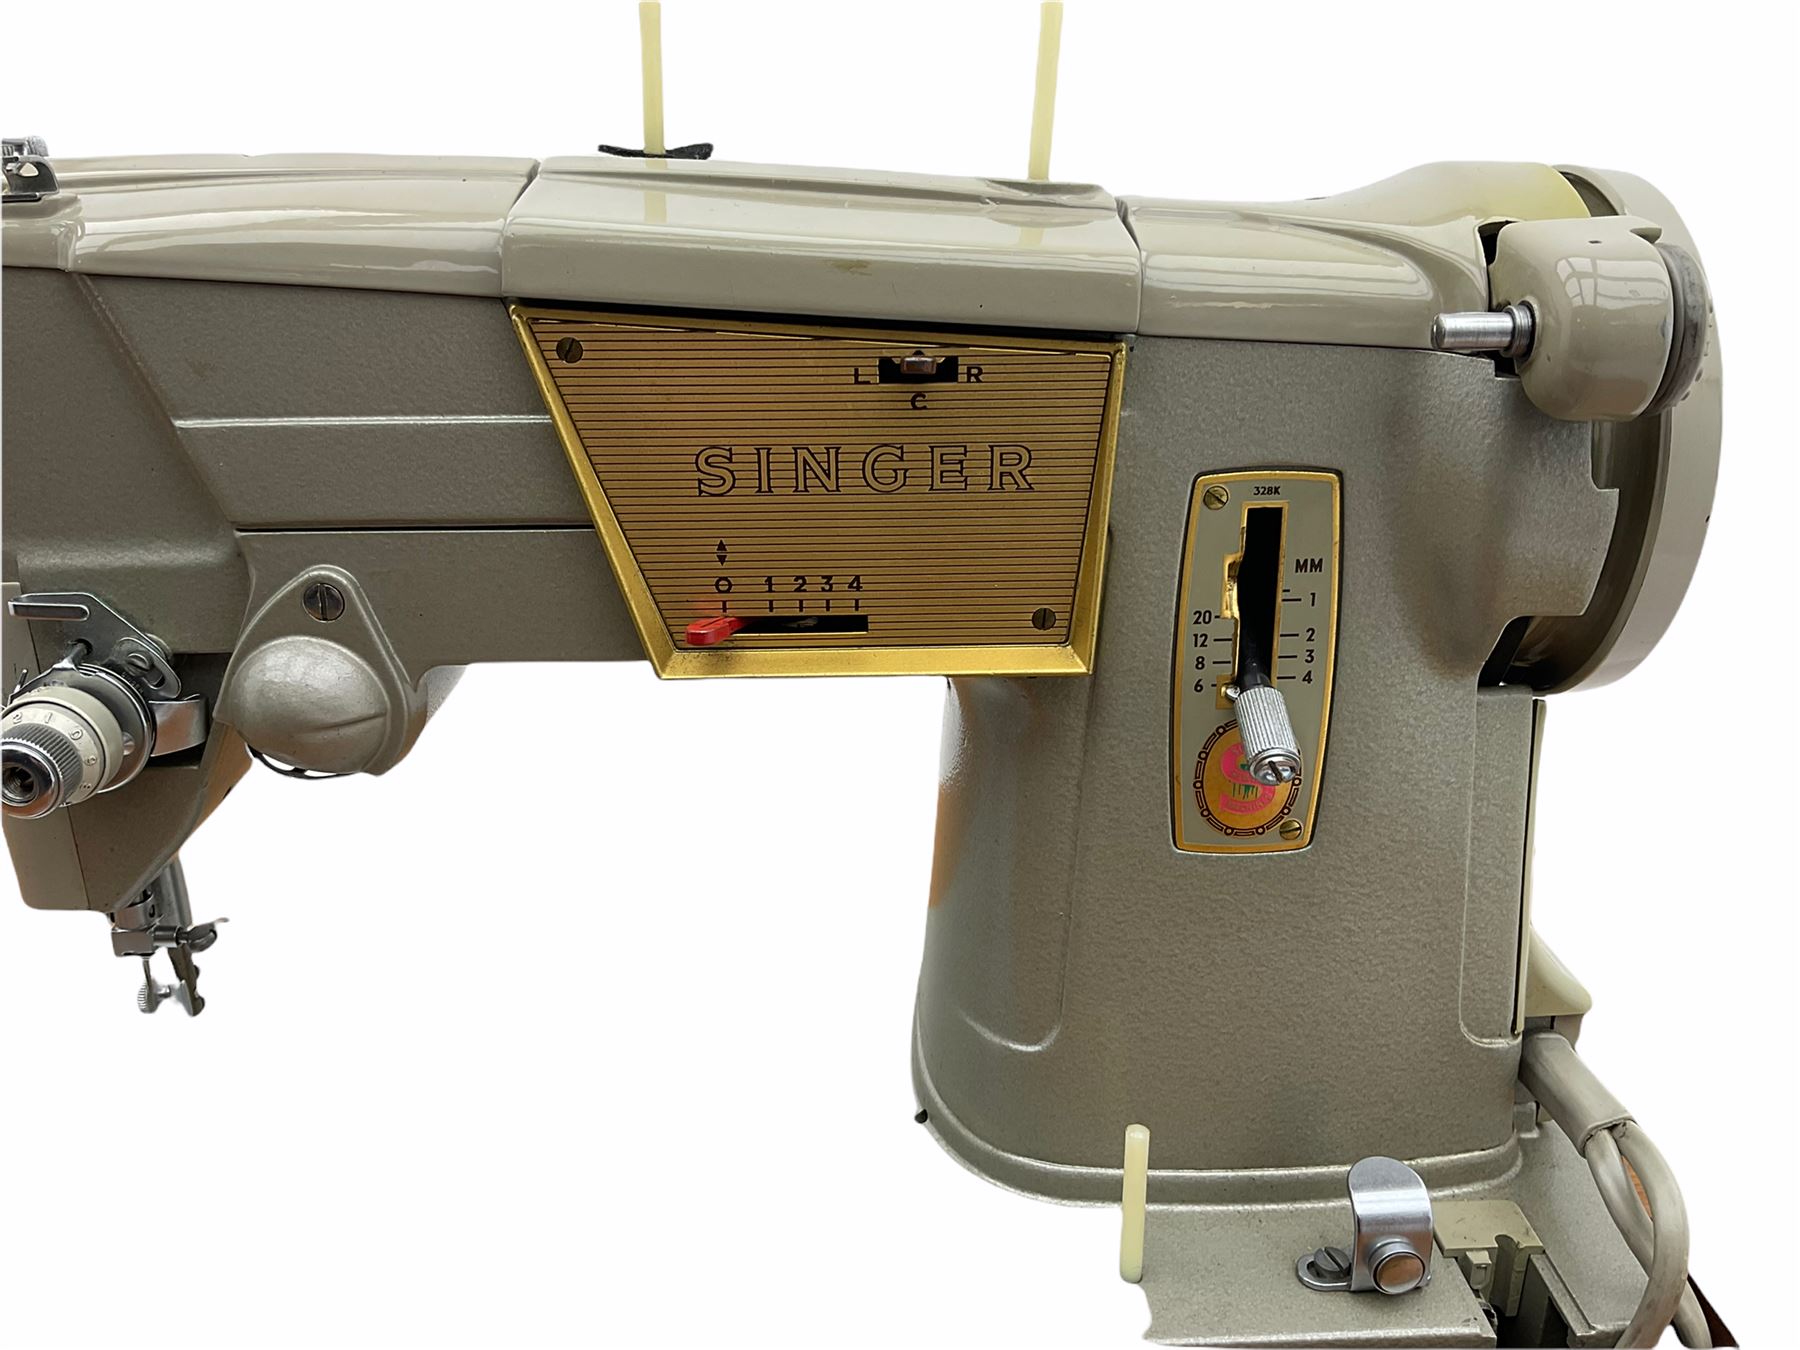 Singer electric sewing machine in teak worktable - Image 4 of 4